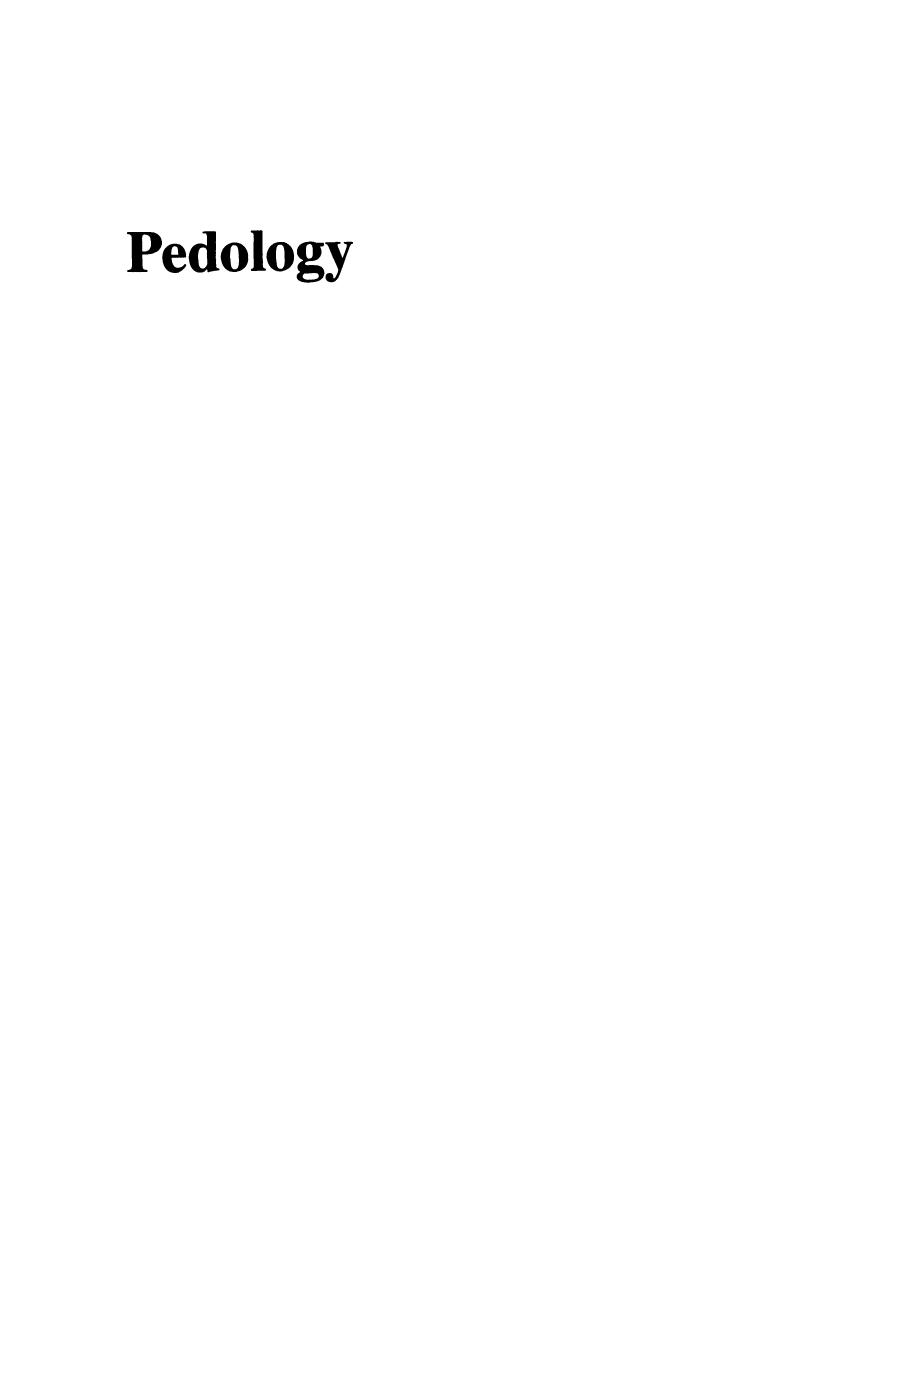 Pedology  Pedogenesis and classification ( PDFDrive ), 1977